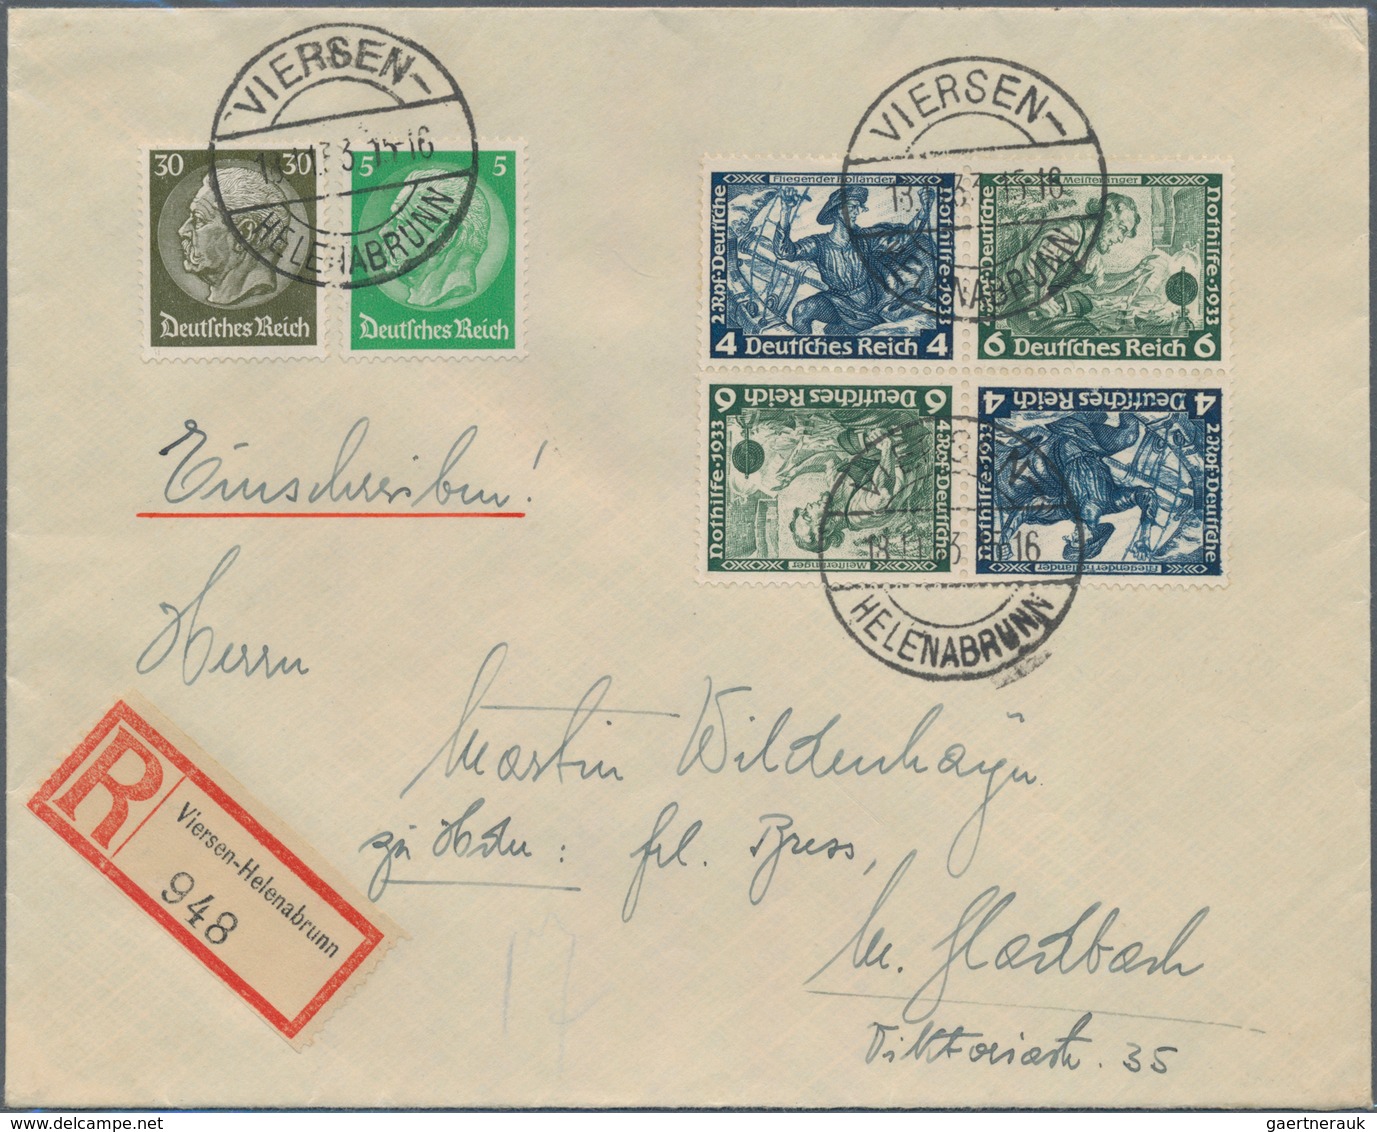 Deutsches Reich - 3. Reich: 1933/1937. Lot von 10 Belegen (9 Briefe, 1 AK Luthertag), davon 8 Stücke